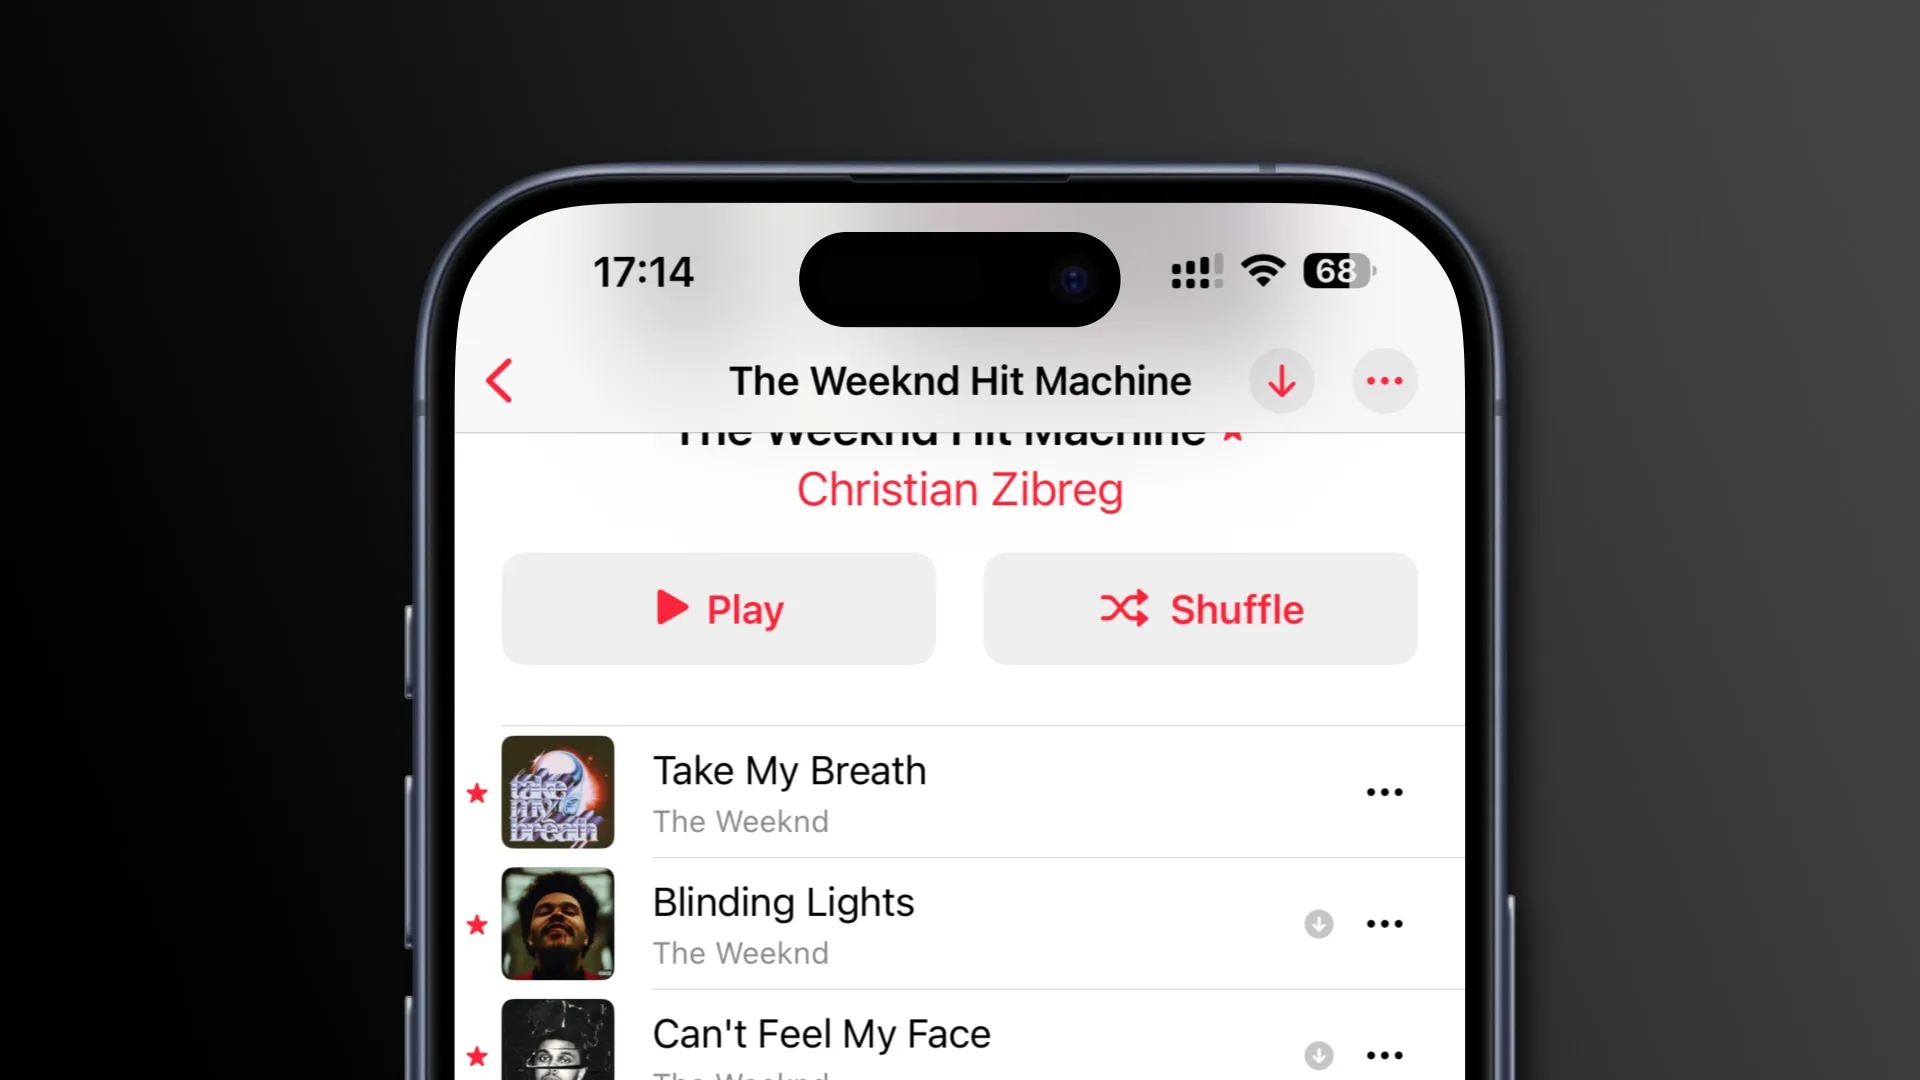 즐겨찾는 노래 옆에 별표 아이콘이 표시된 Apple Music의 트랙 목록